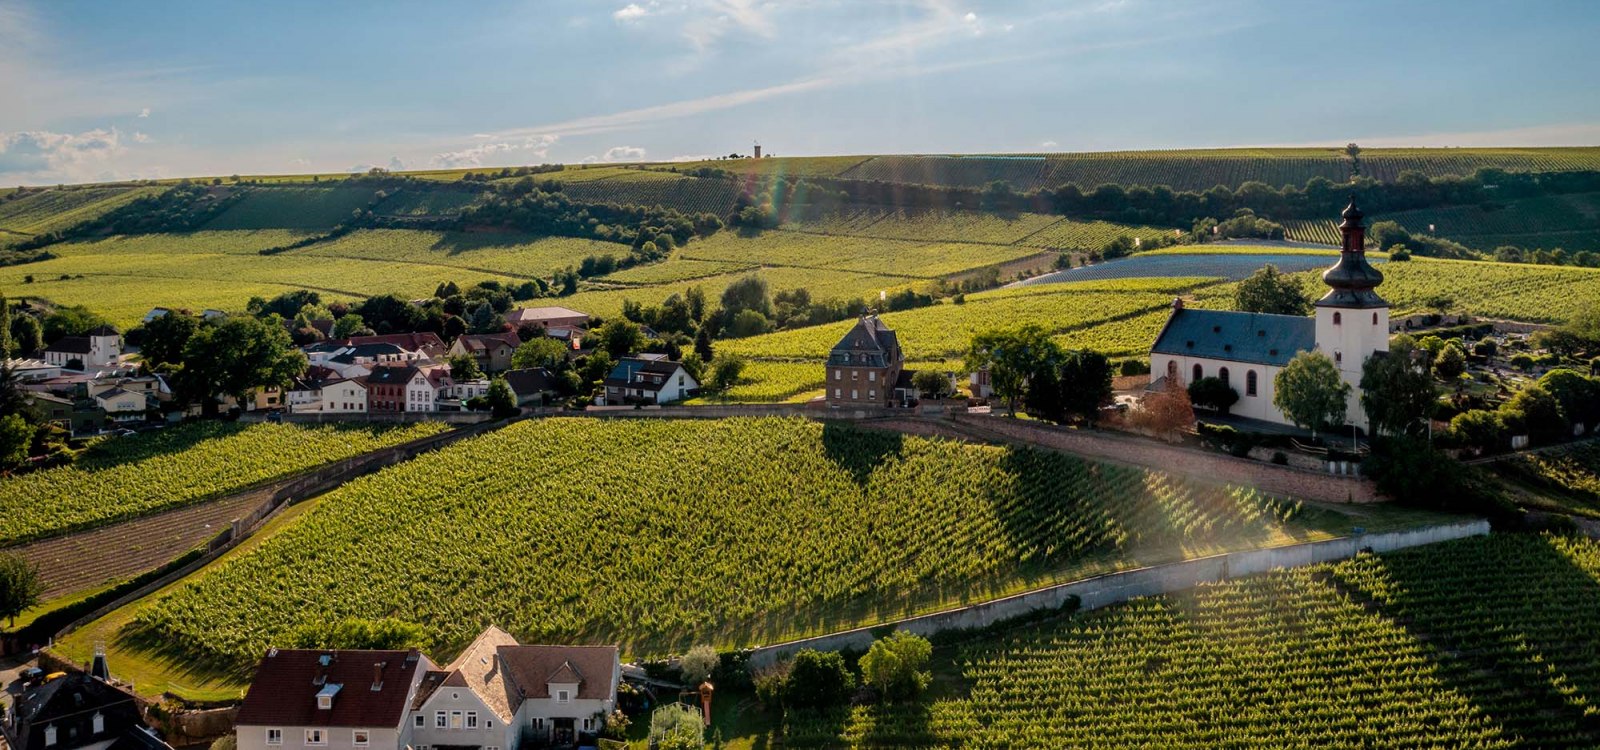 Vineyard site &quot;Niersteiner Glöck&quot; at sunset. Above the vineyard site lies the Kilianskirche, a landmark in Nierstein., © Torsten Silz